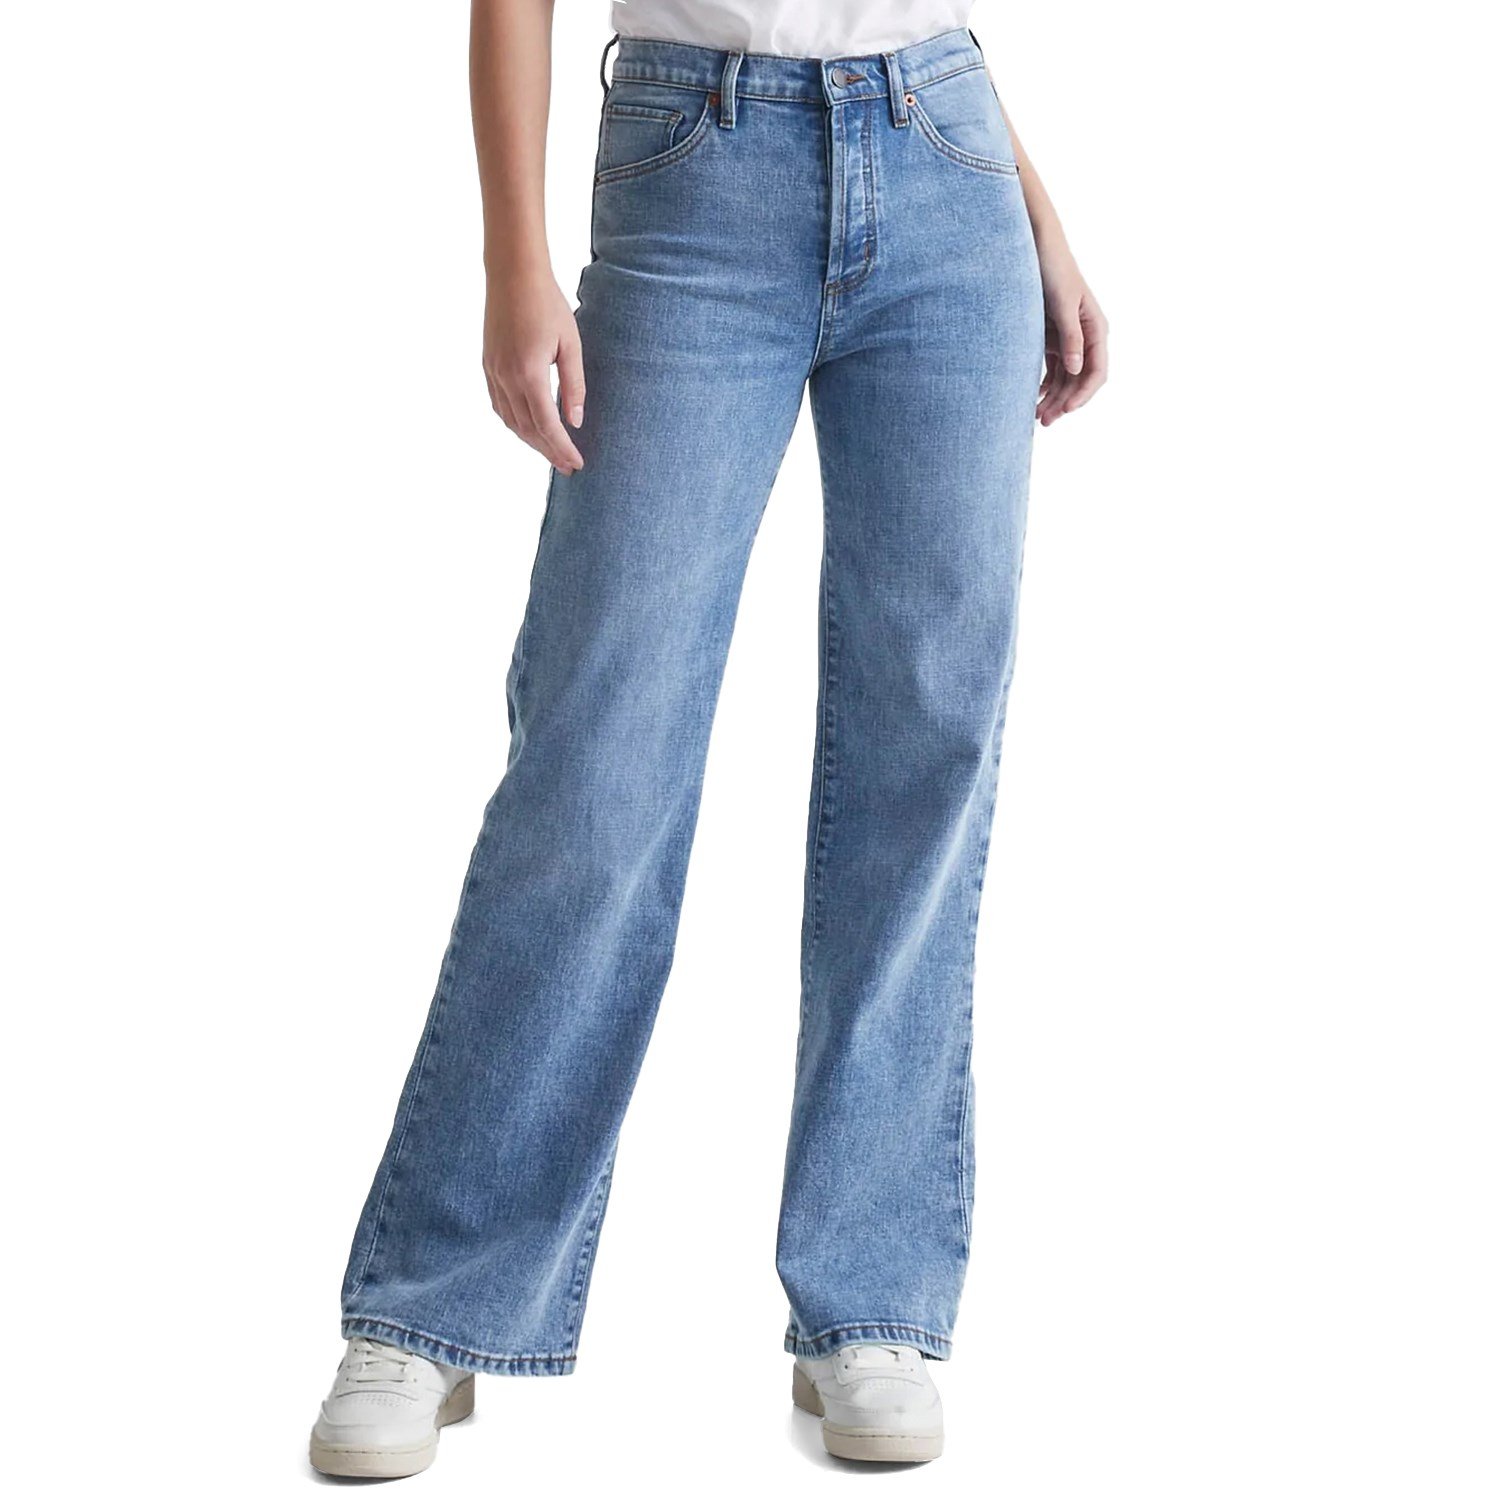 мужские джинсы ripndip sprinkles wide leg denim синий размер 32 Широкие джинсы DU/ER Midweight Performance Denim, синий